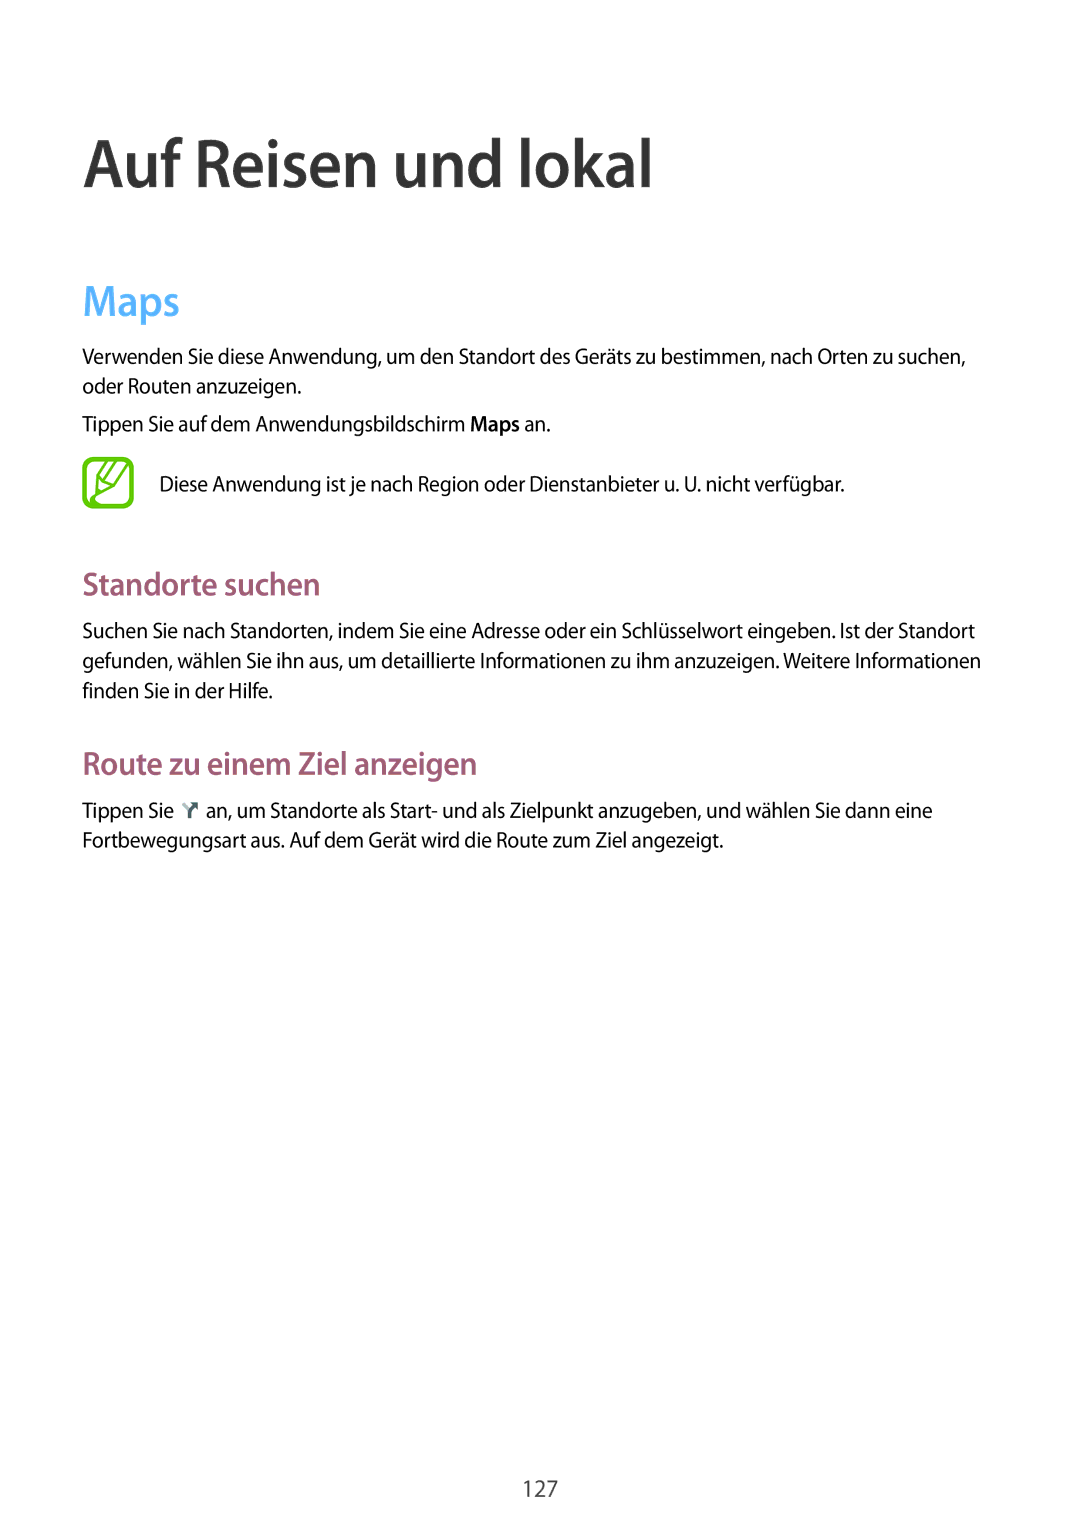 Samsung SM-T9000ZKADBT, SM-T9000ZWADBT, SM-T9000ZKAXEF manual Maps, Standorte suchen, Route zu einem Ziel anzeigen 